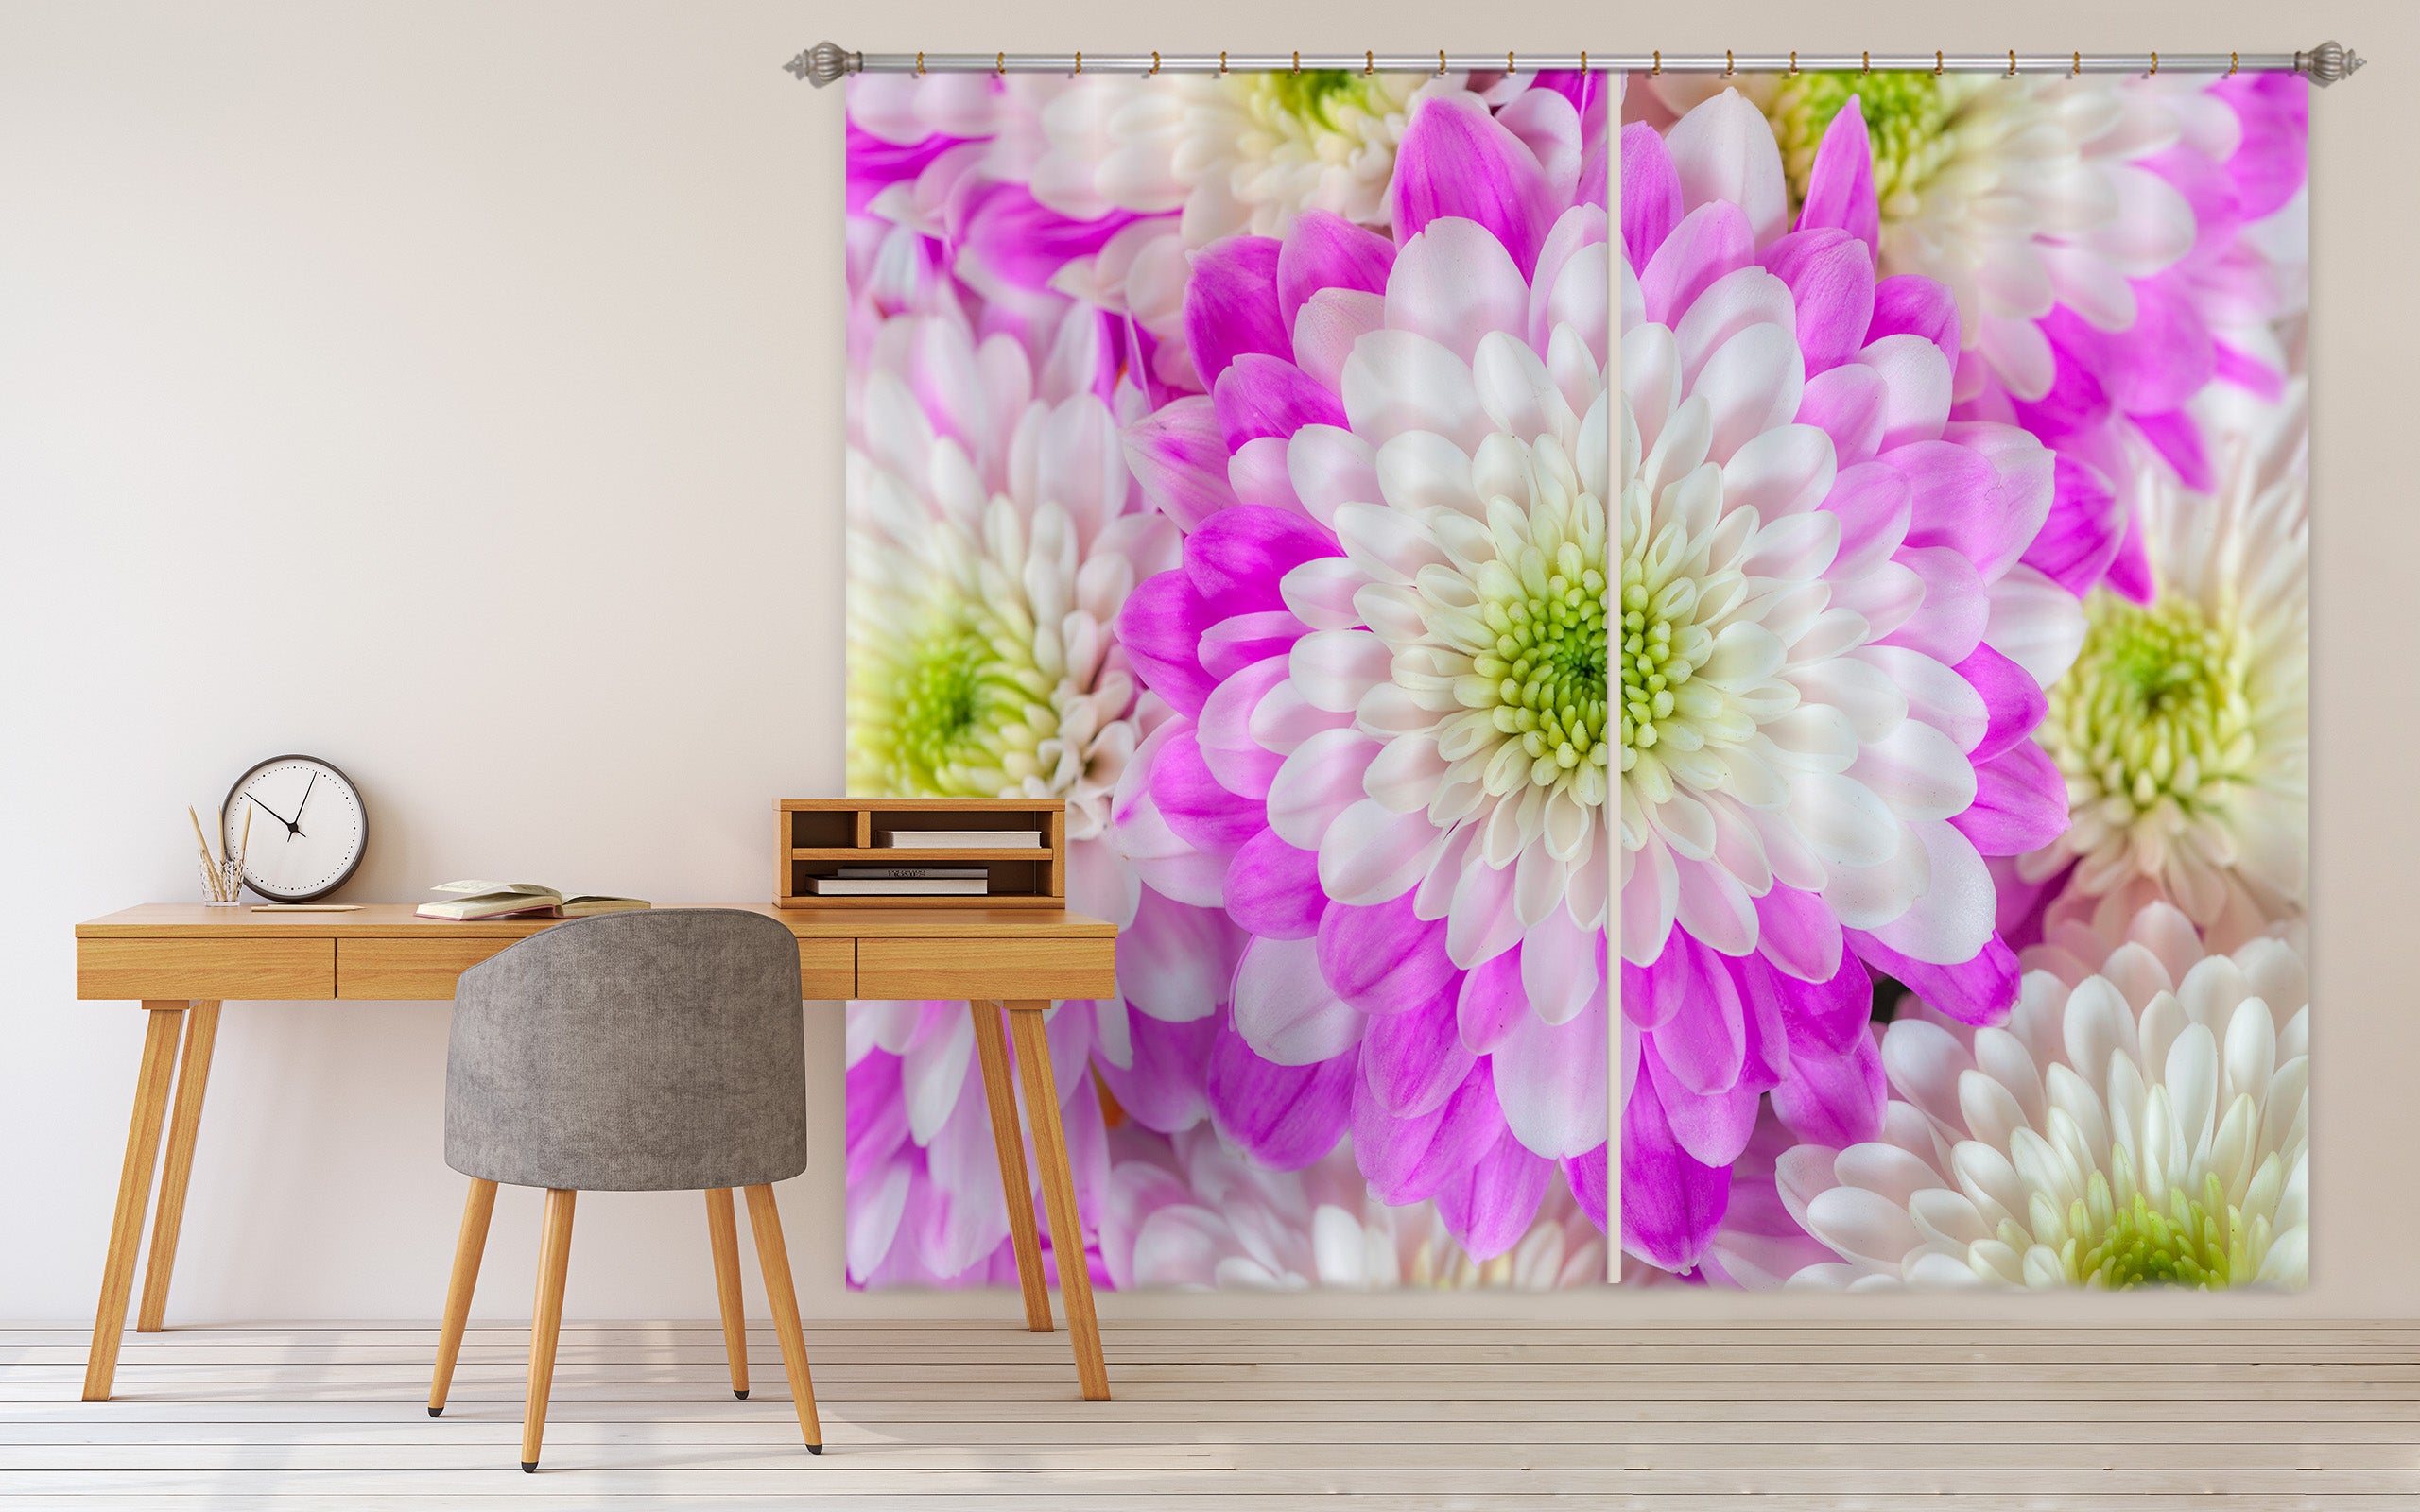 3D White Chrysanthemum 224 Assaf Frank Curtain Curtains Drapes